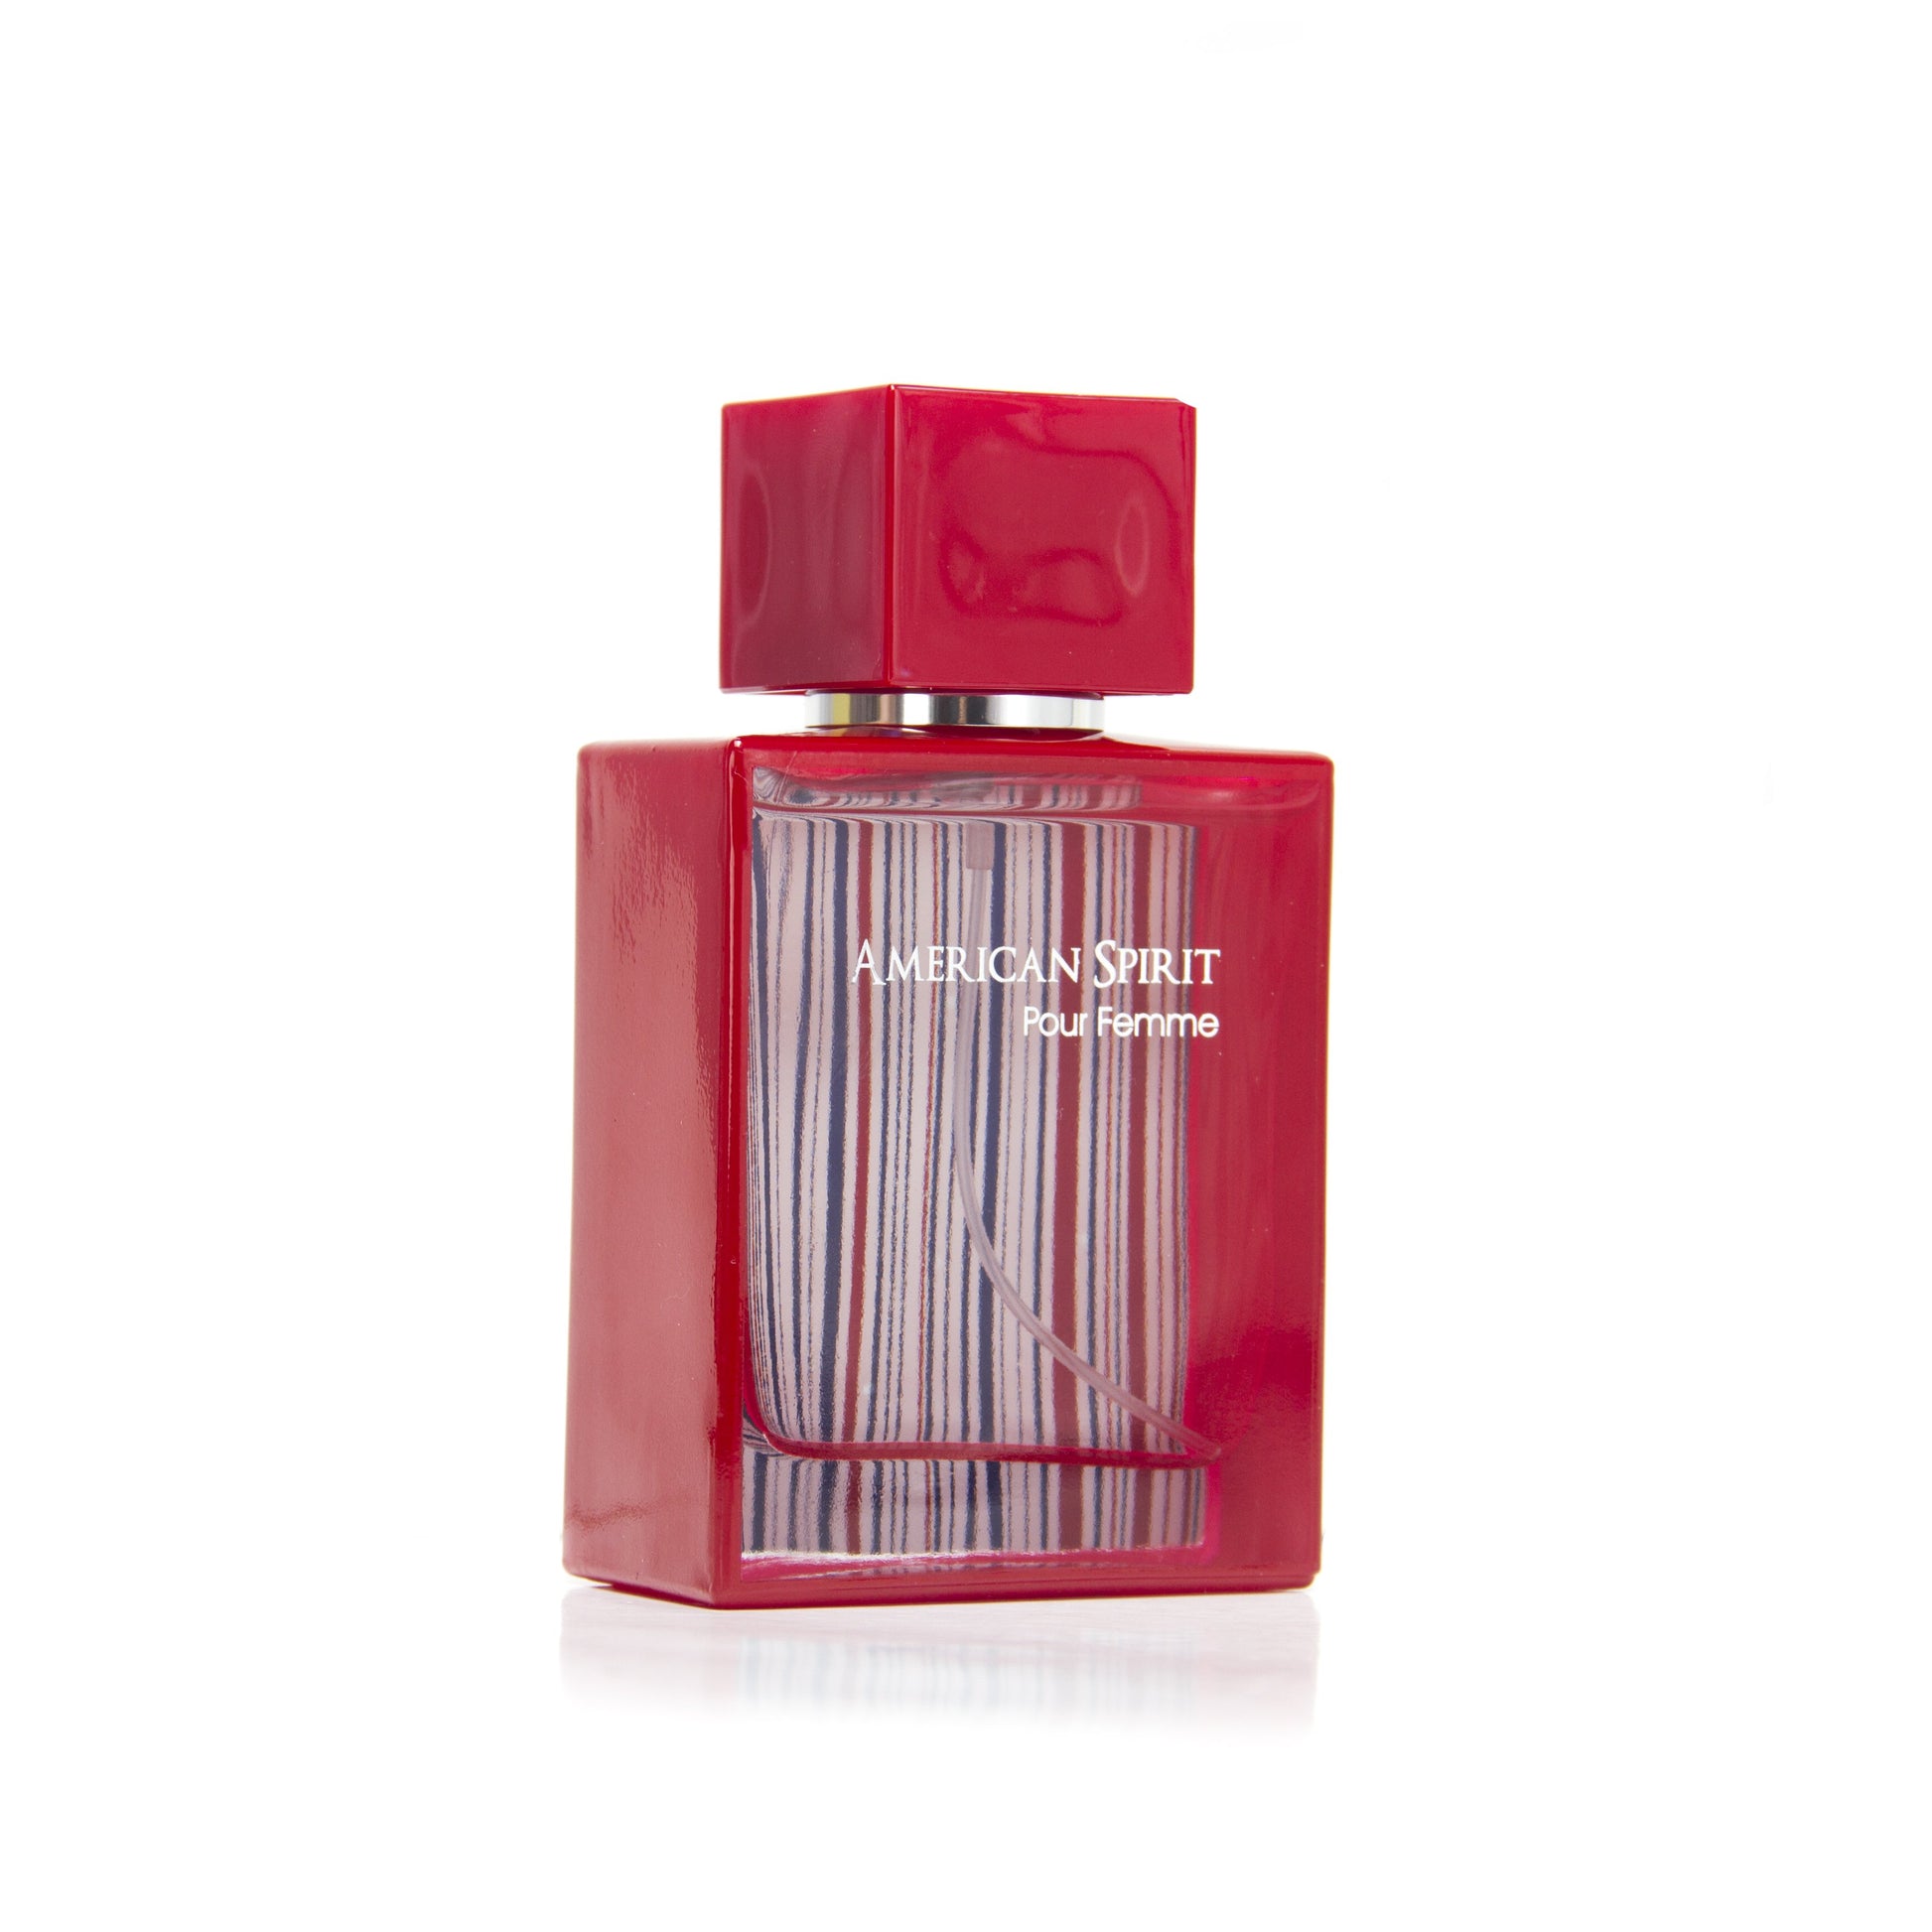 American Spirit Pour Femme Eau de Parfum Spray for Women by San Reinald, Product image 2